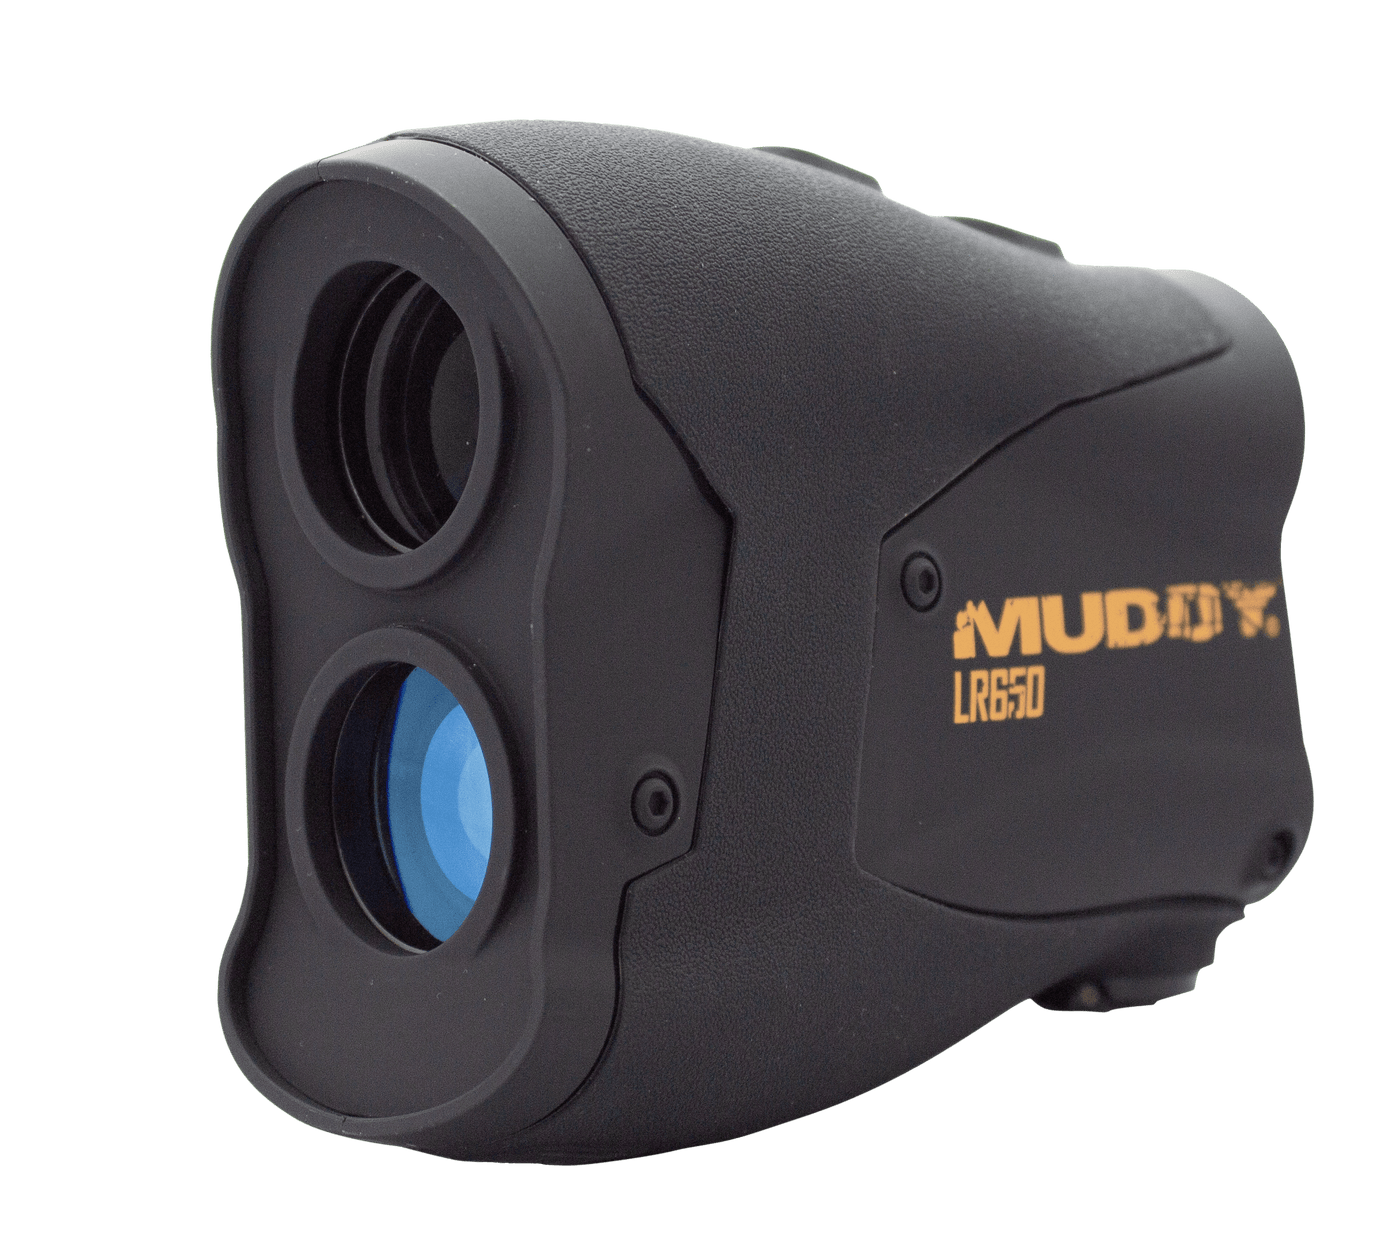 Muddy Muddy Lr650, Muddy Mud-lr650   Muddy Range Finder  650 Optics